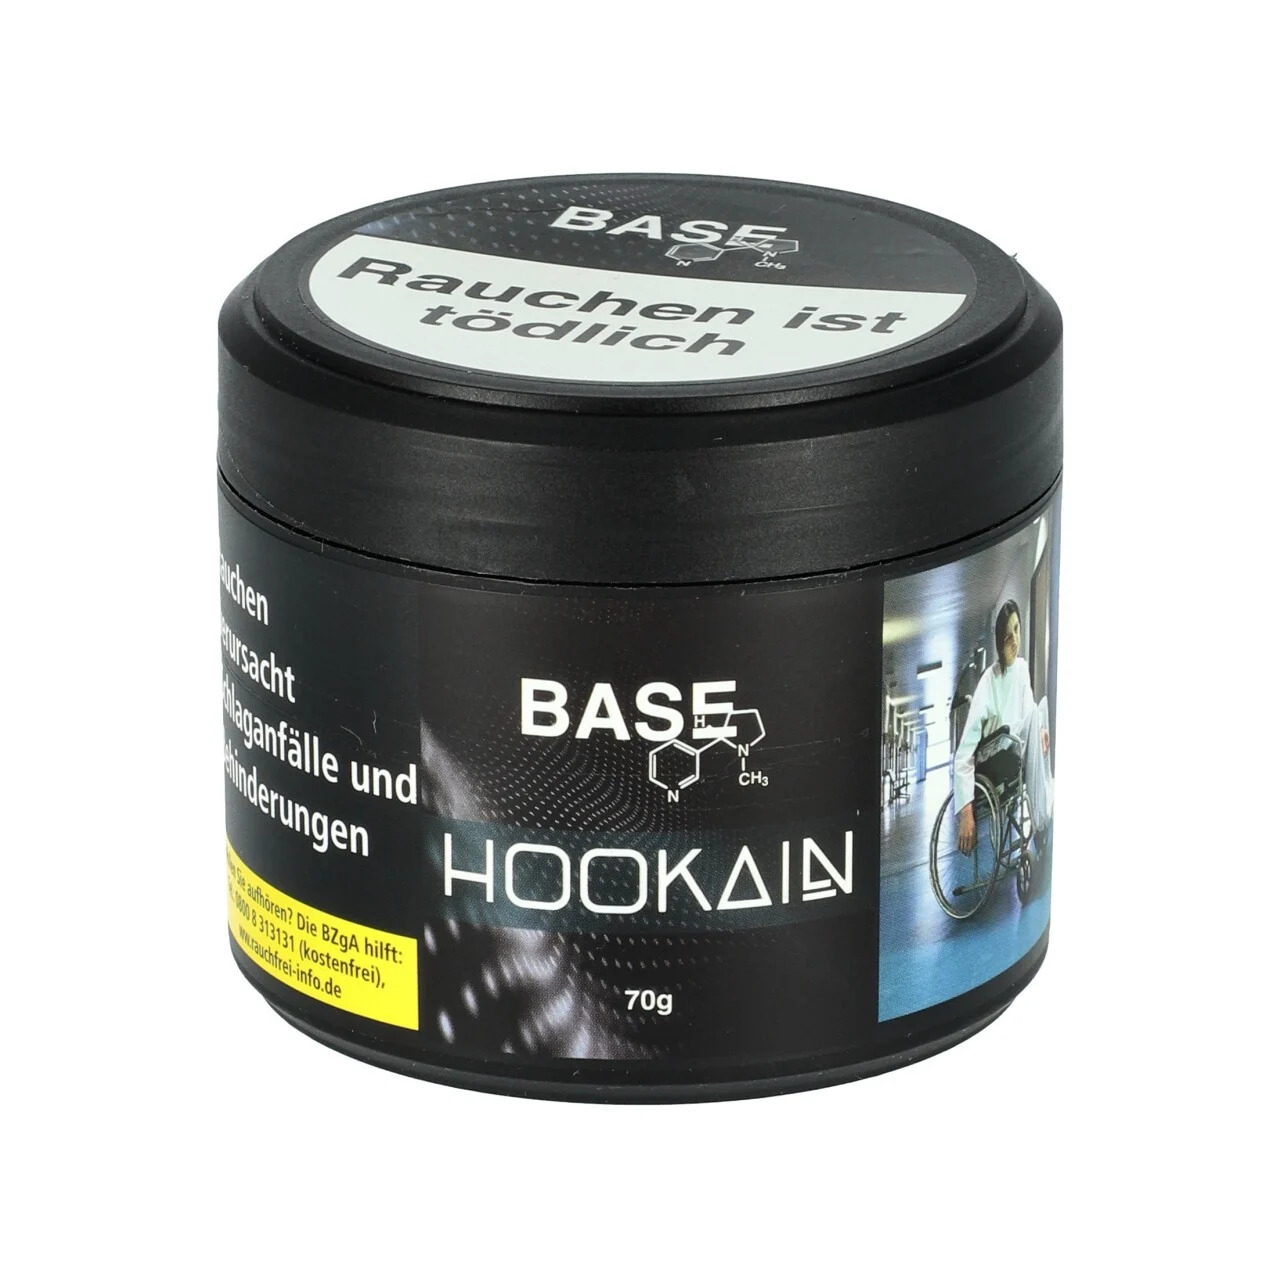 Hookain Base Tobacco 75g